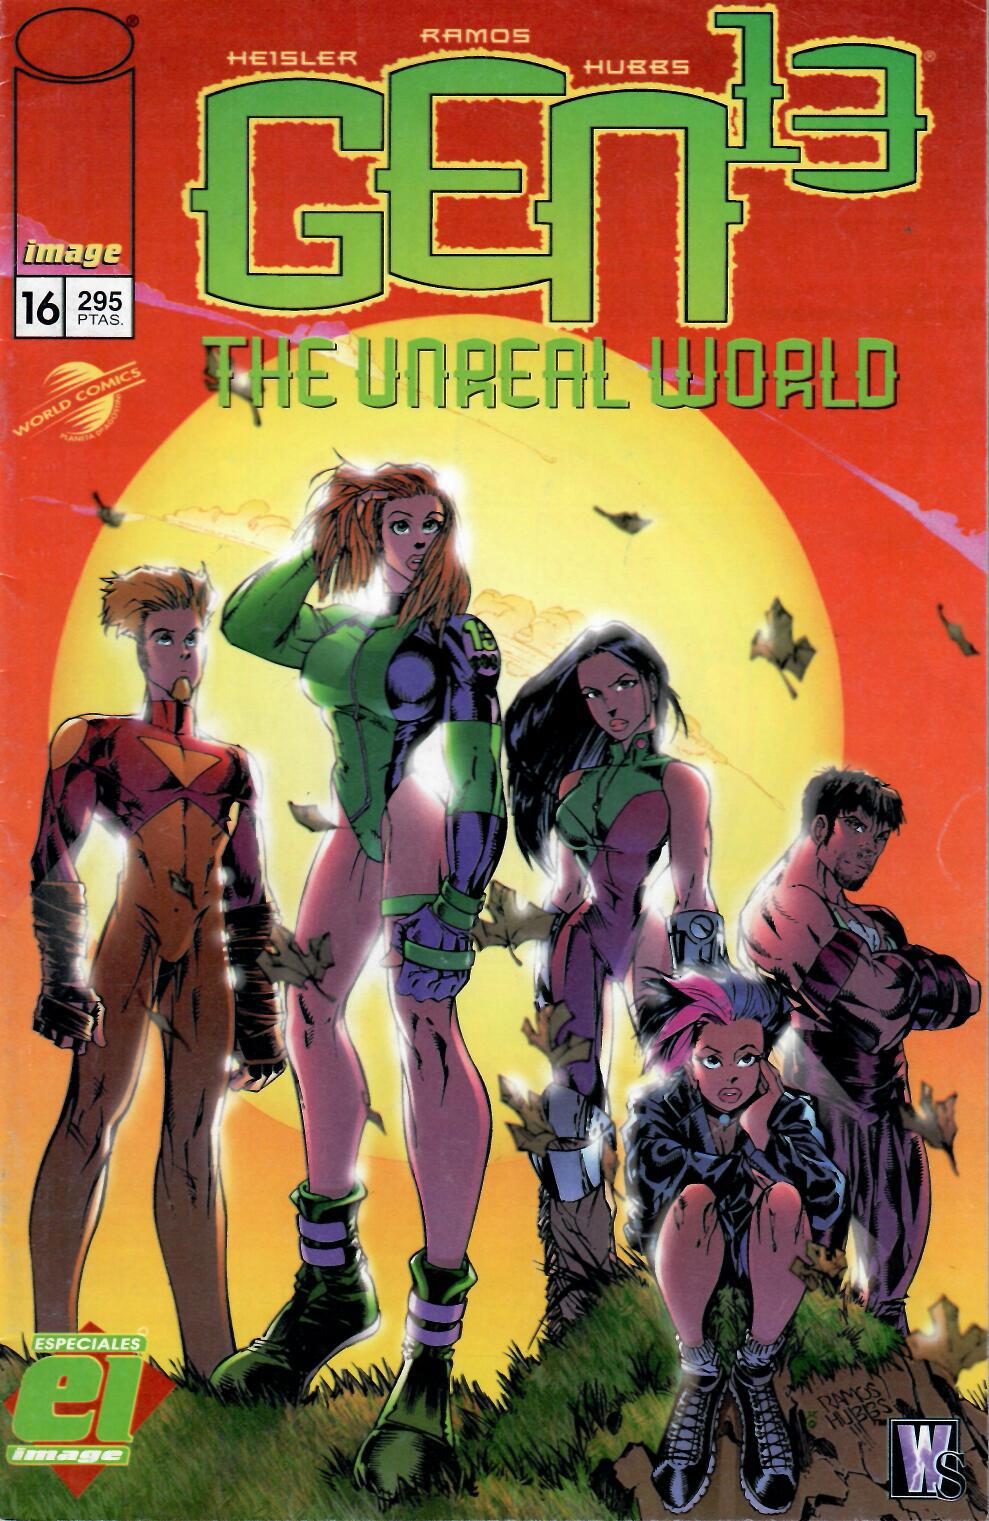 Especiales Image. World Comics 1996. Nº 16 Gen 13 The Unreal World